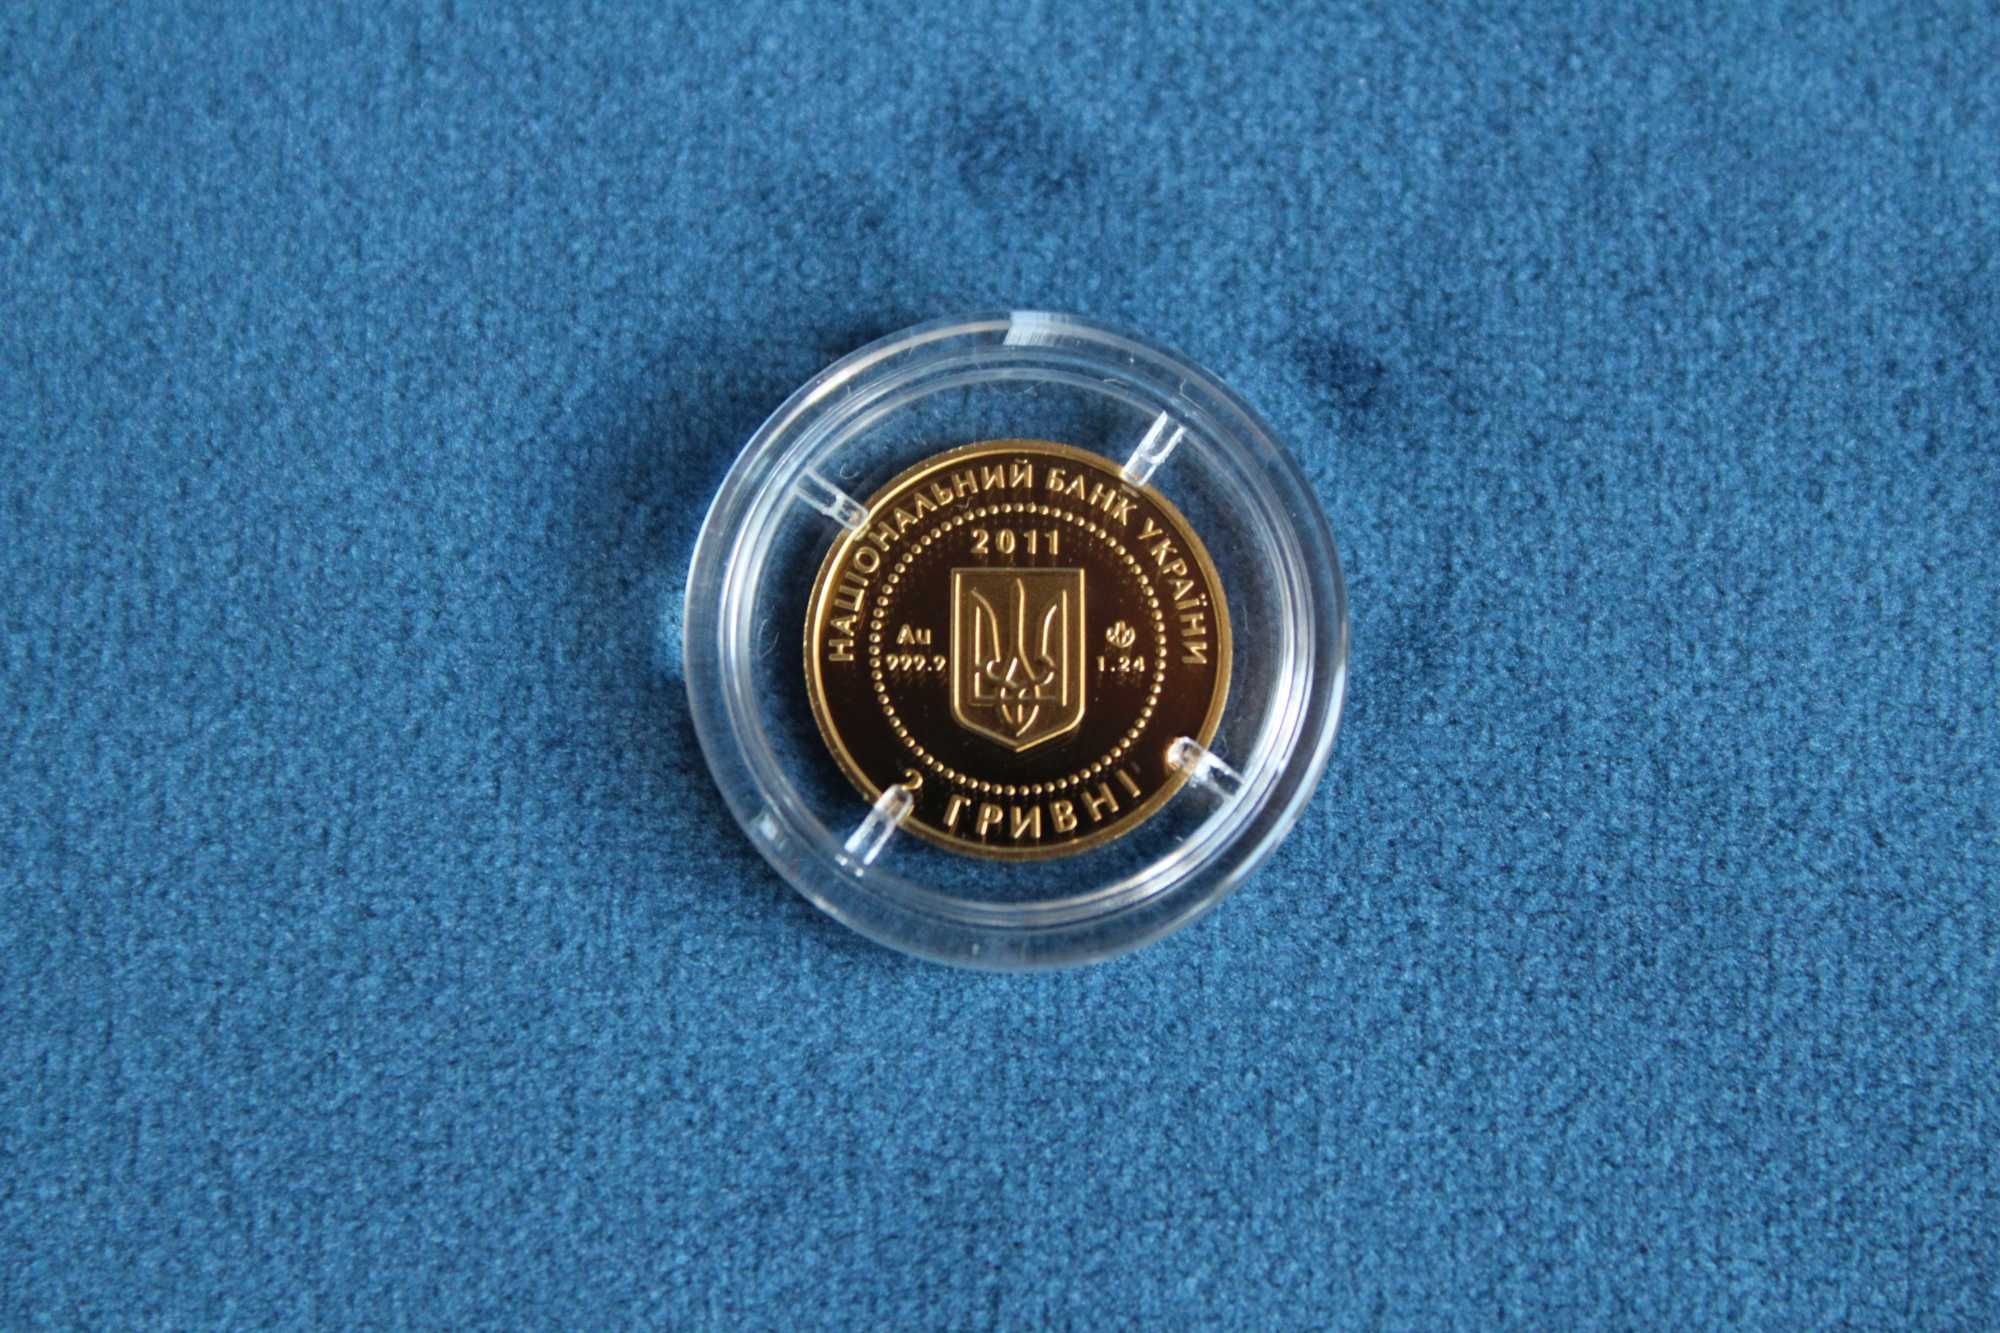 Монета Скифское золото. Олень 2 грн.